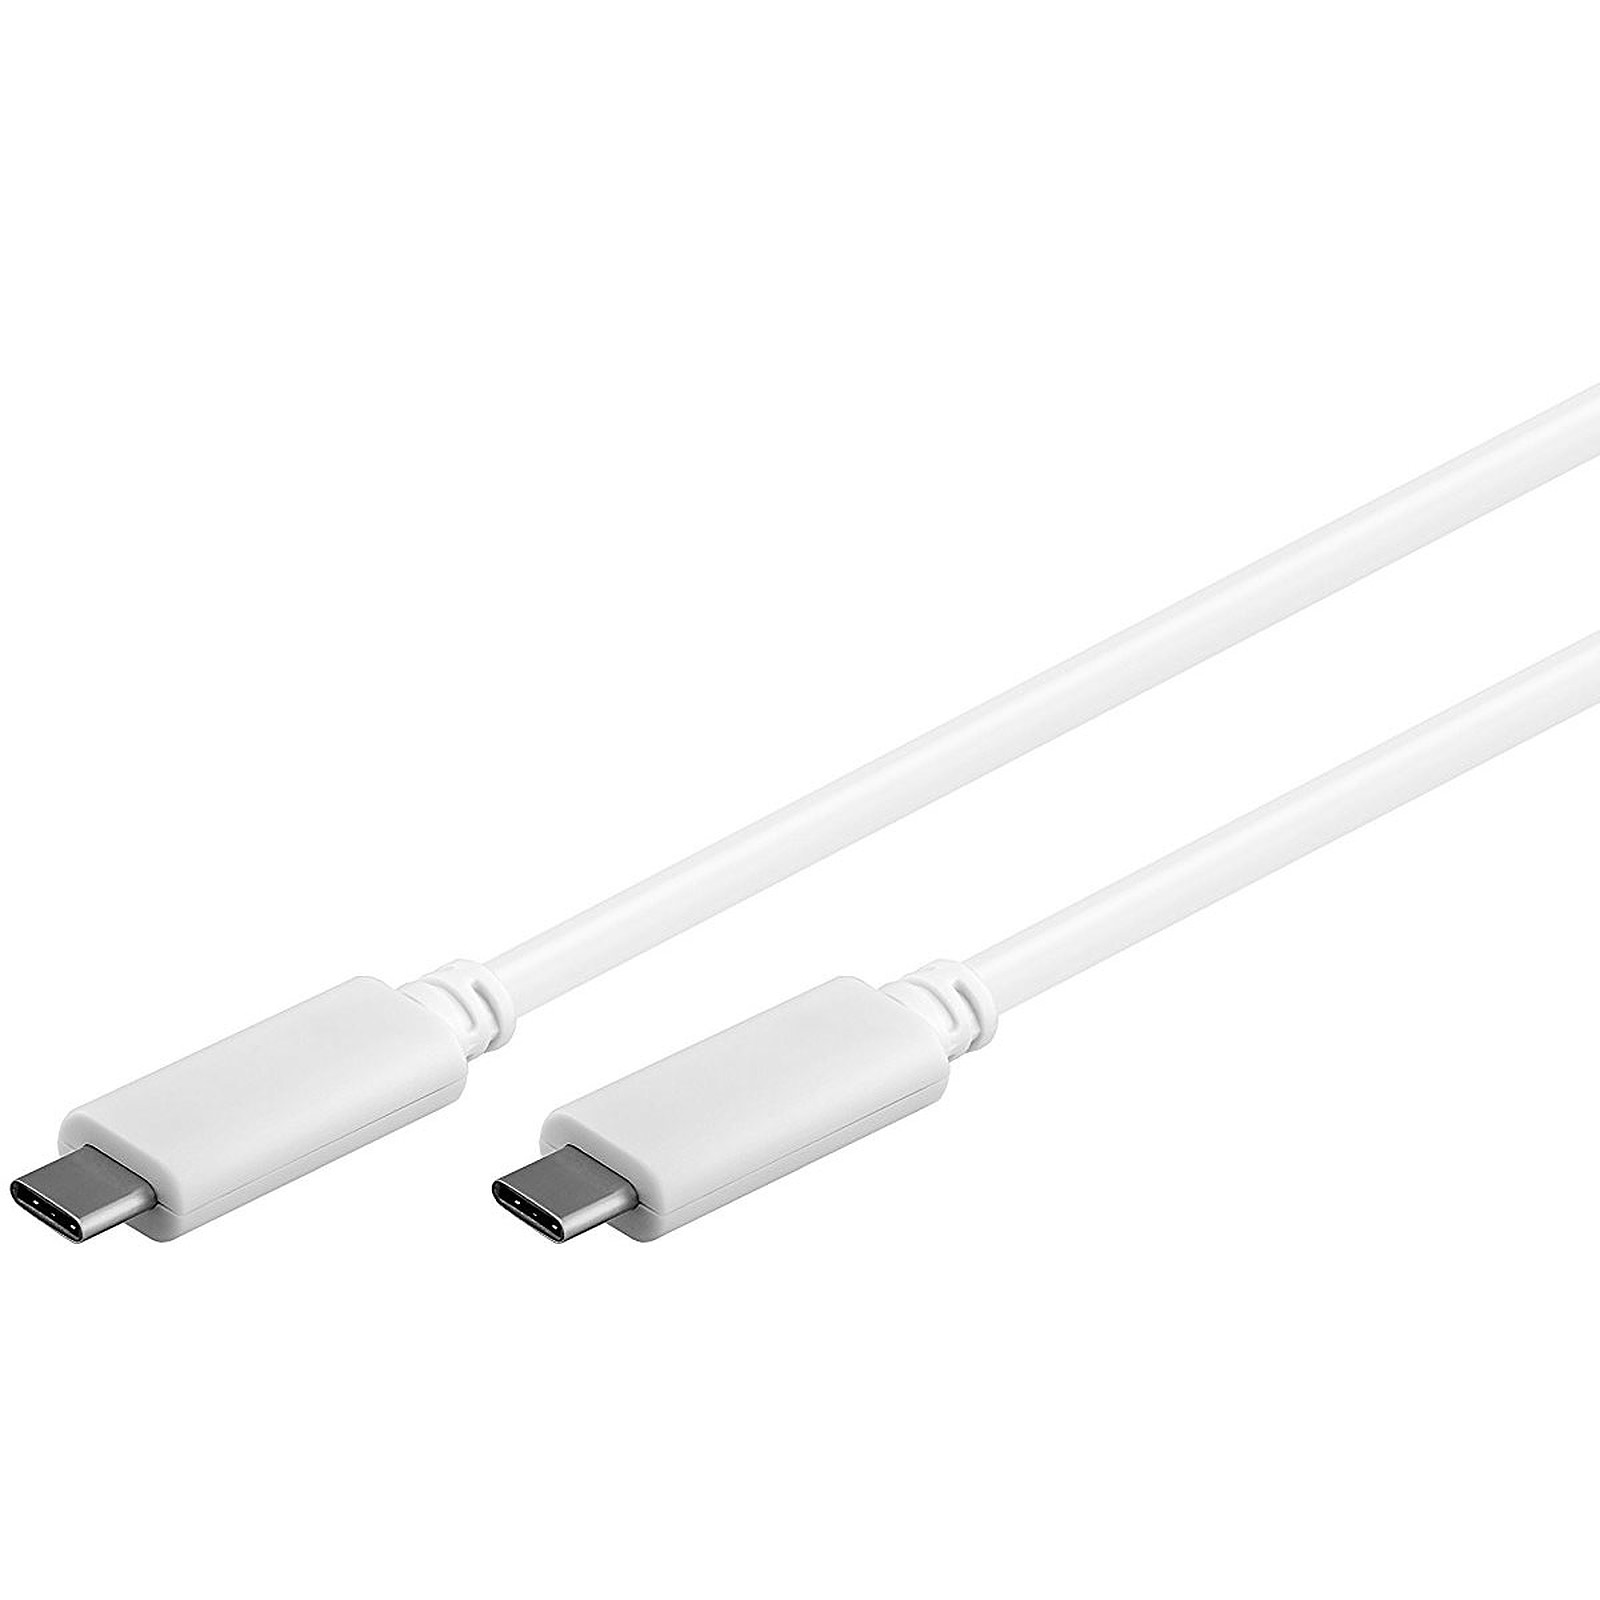 Cable USB 3.1 Type C (Male/Male) Blanc - 1 m - USB Generique